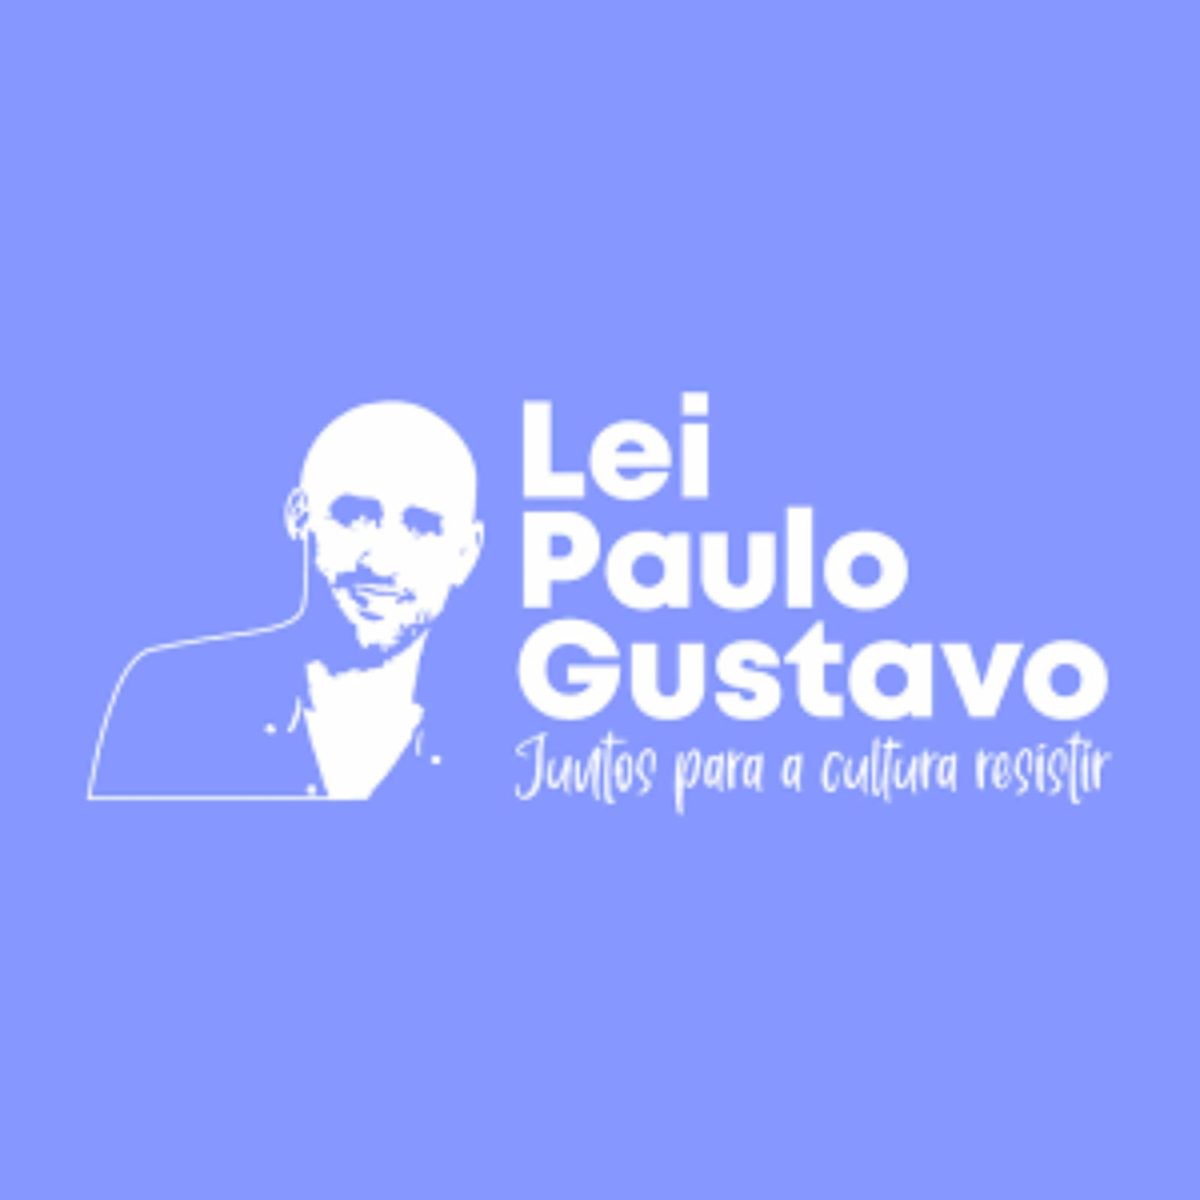 Fundação Cultural de Brusque lança formulários referentes a Lei Paulo Gustavo